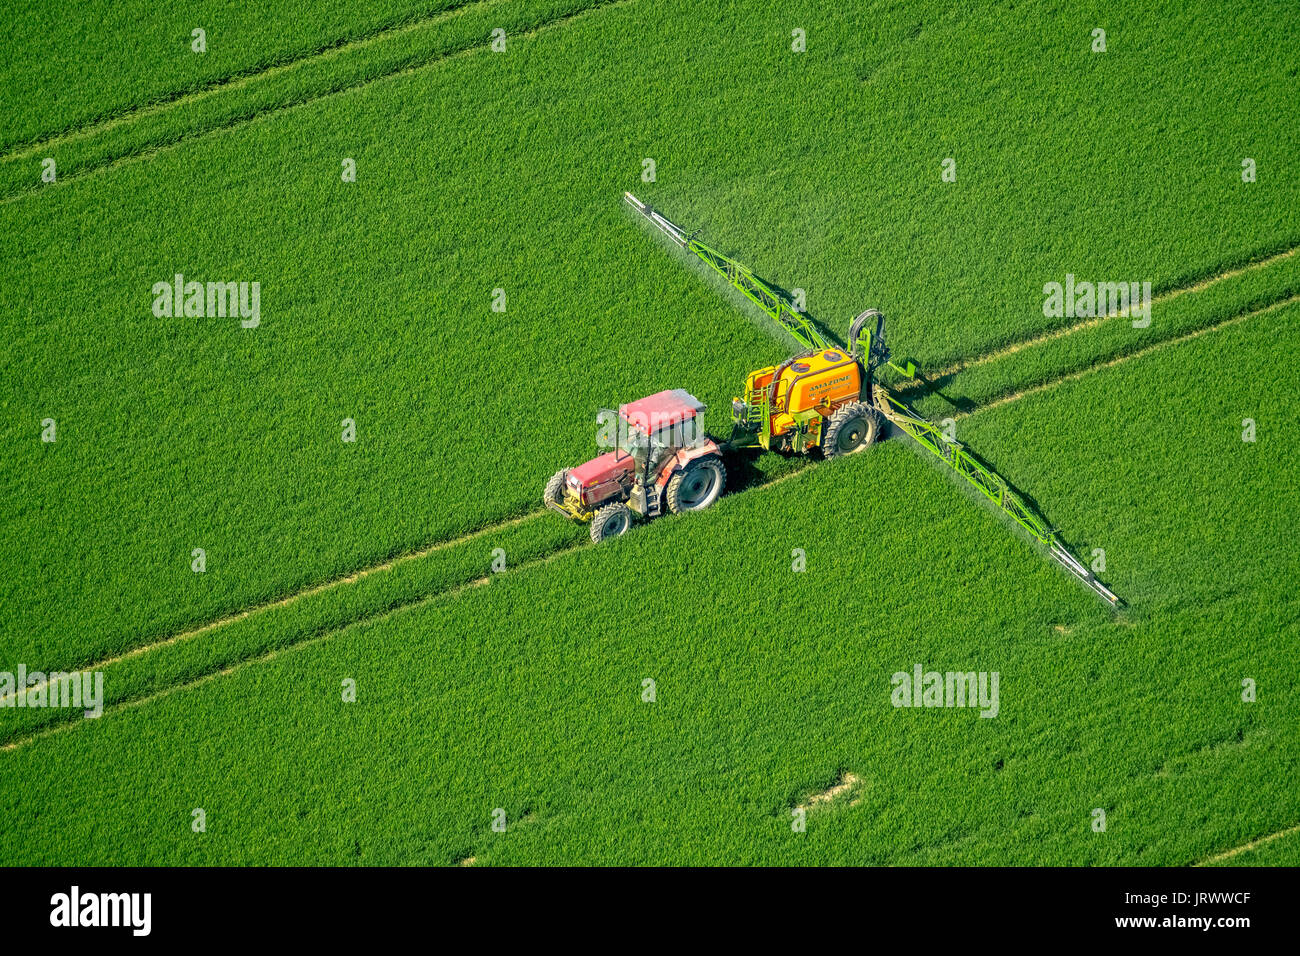 Tracker la pulvérisation de pesticides sur un champ de grain vert, l'agriculture, photo aérienne, Warstein, Sauerland, Rhénanie du Nord-Westphalie Banque D'Images